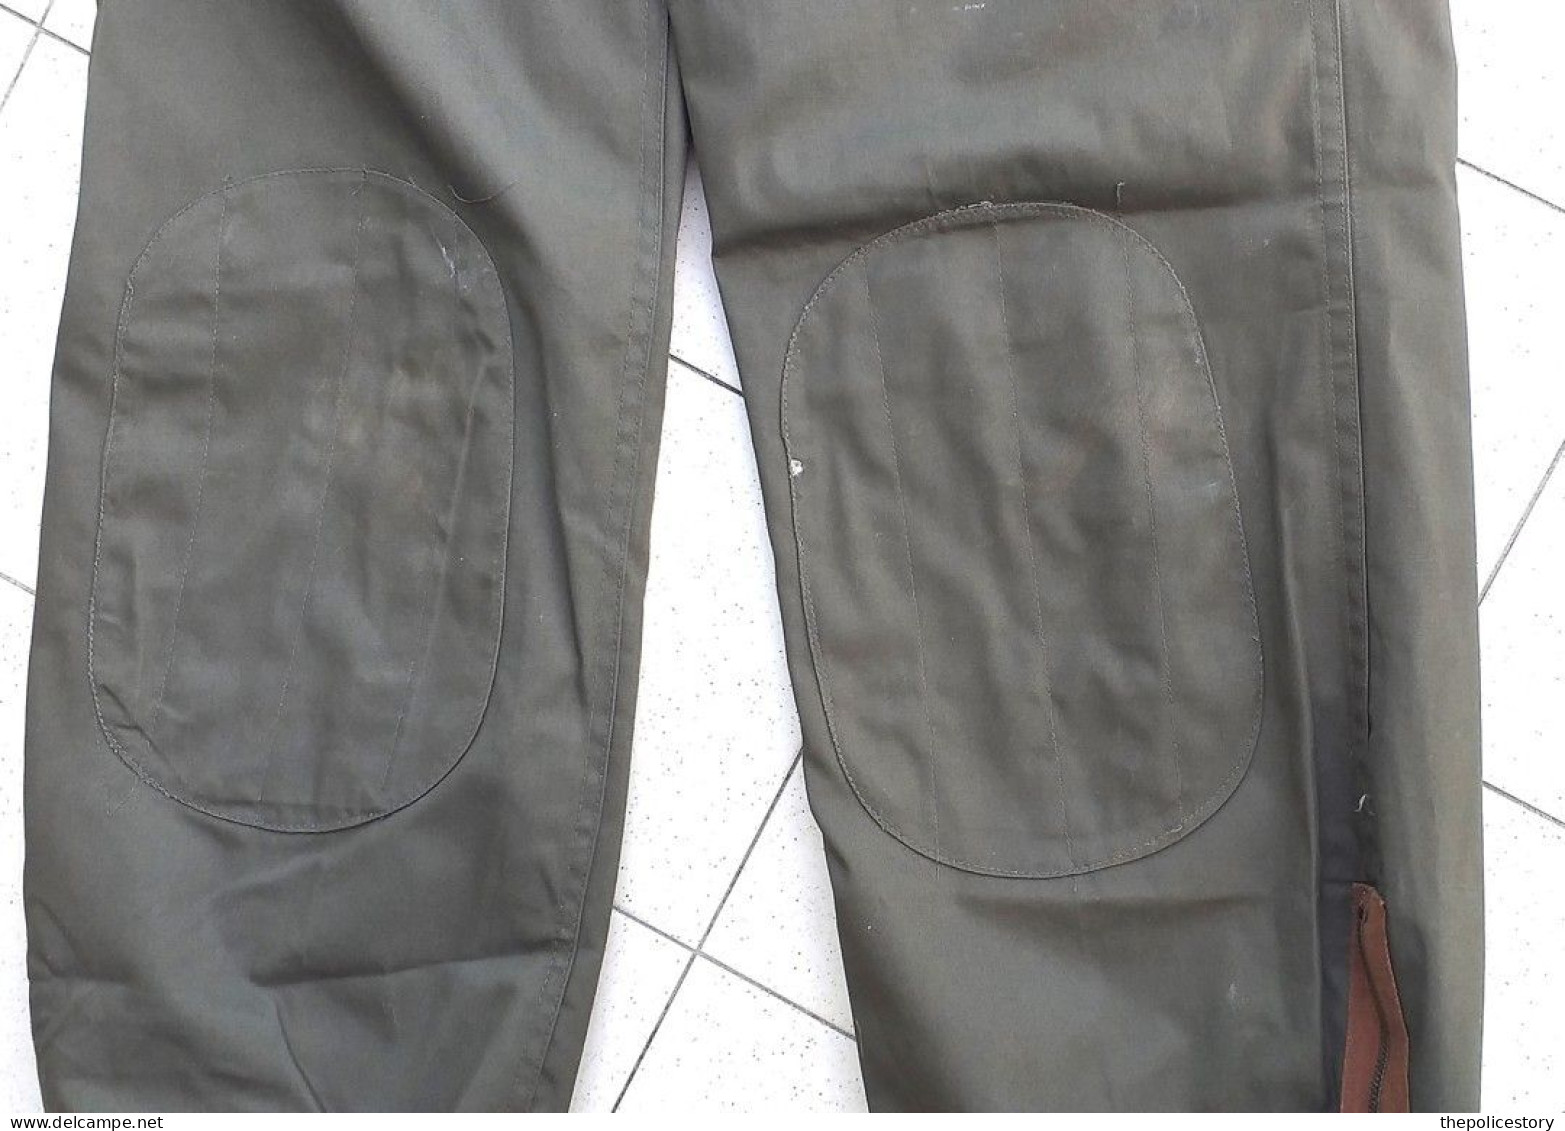 Giacca pantaloni mimetica verde E.I. tg. 52 anni '80 originale marcata